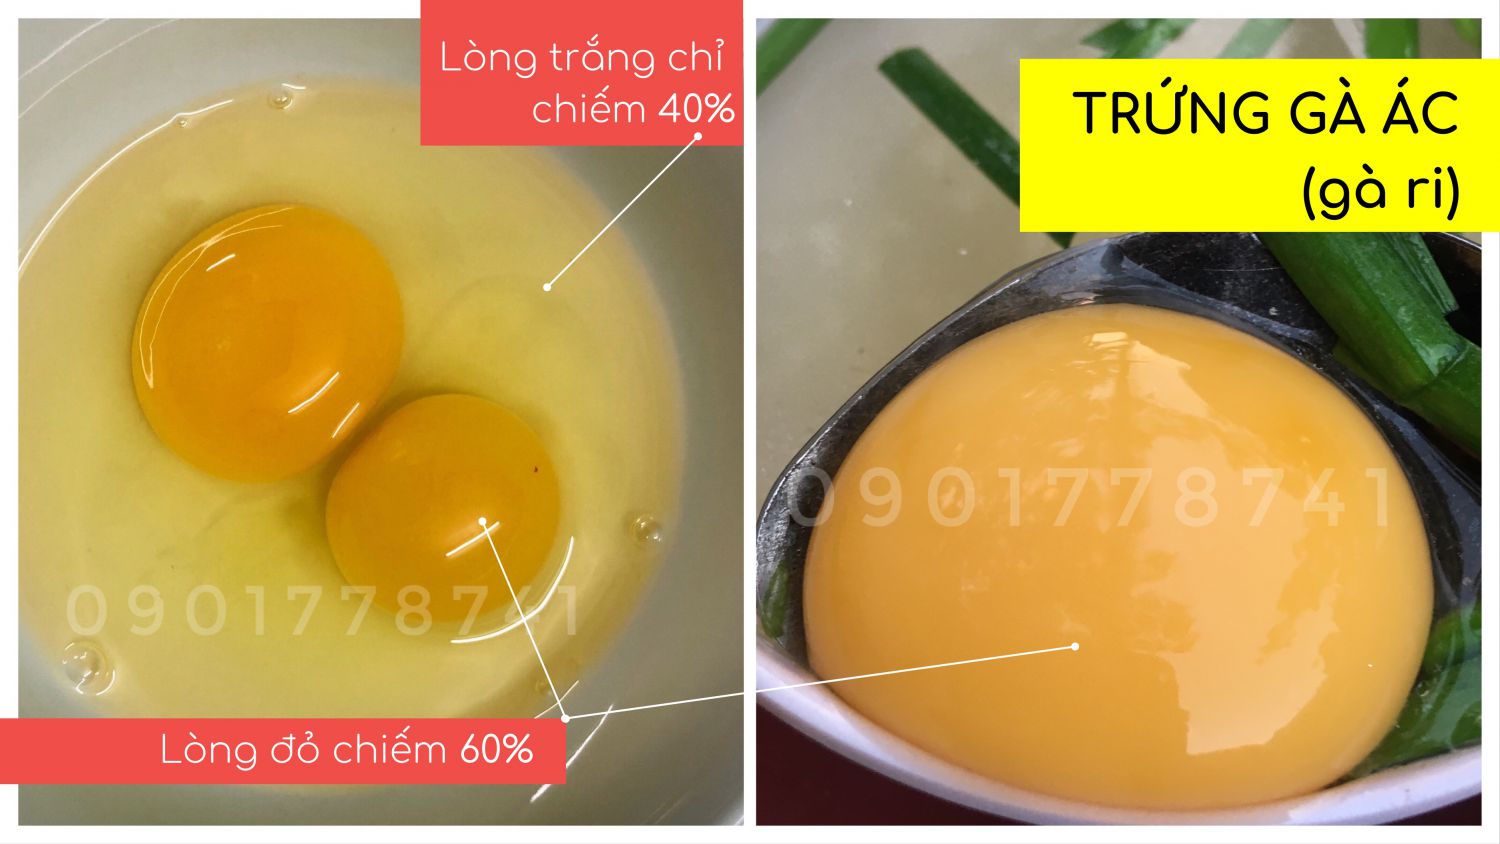 Trứng gà ác: lòng đỏ chiếm khoảng hơn 60%, lòng trắng chỉ chiếm gần 40%